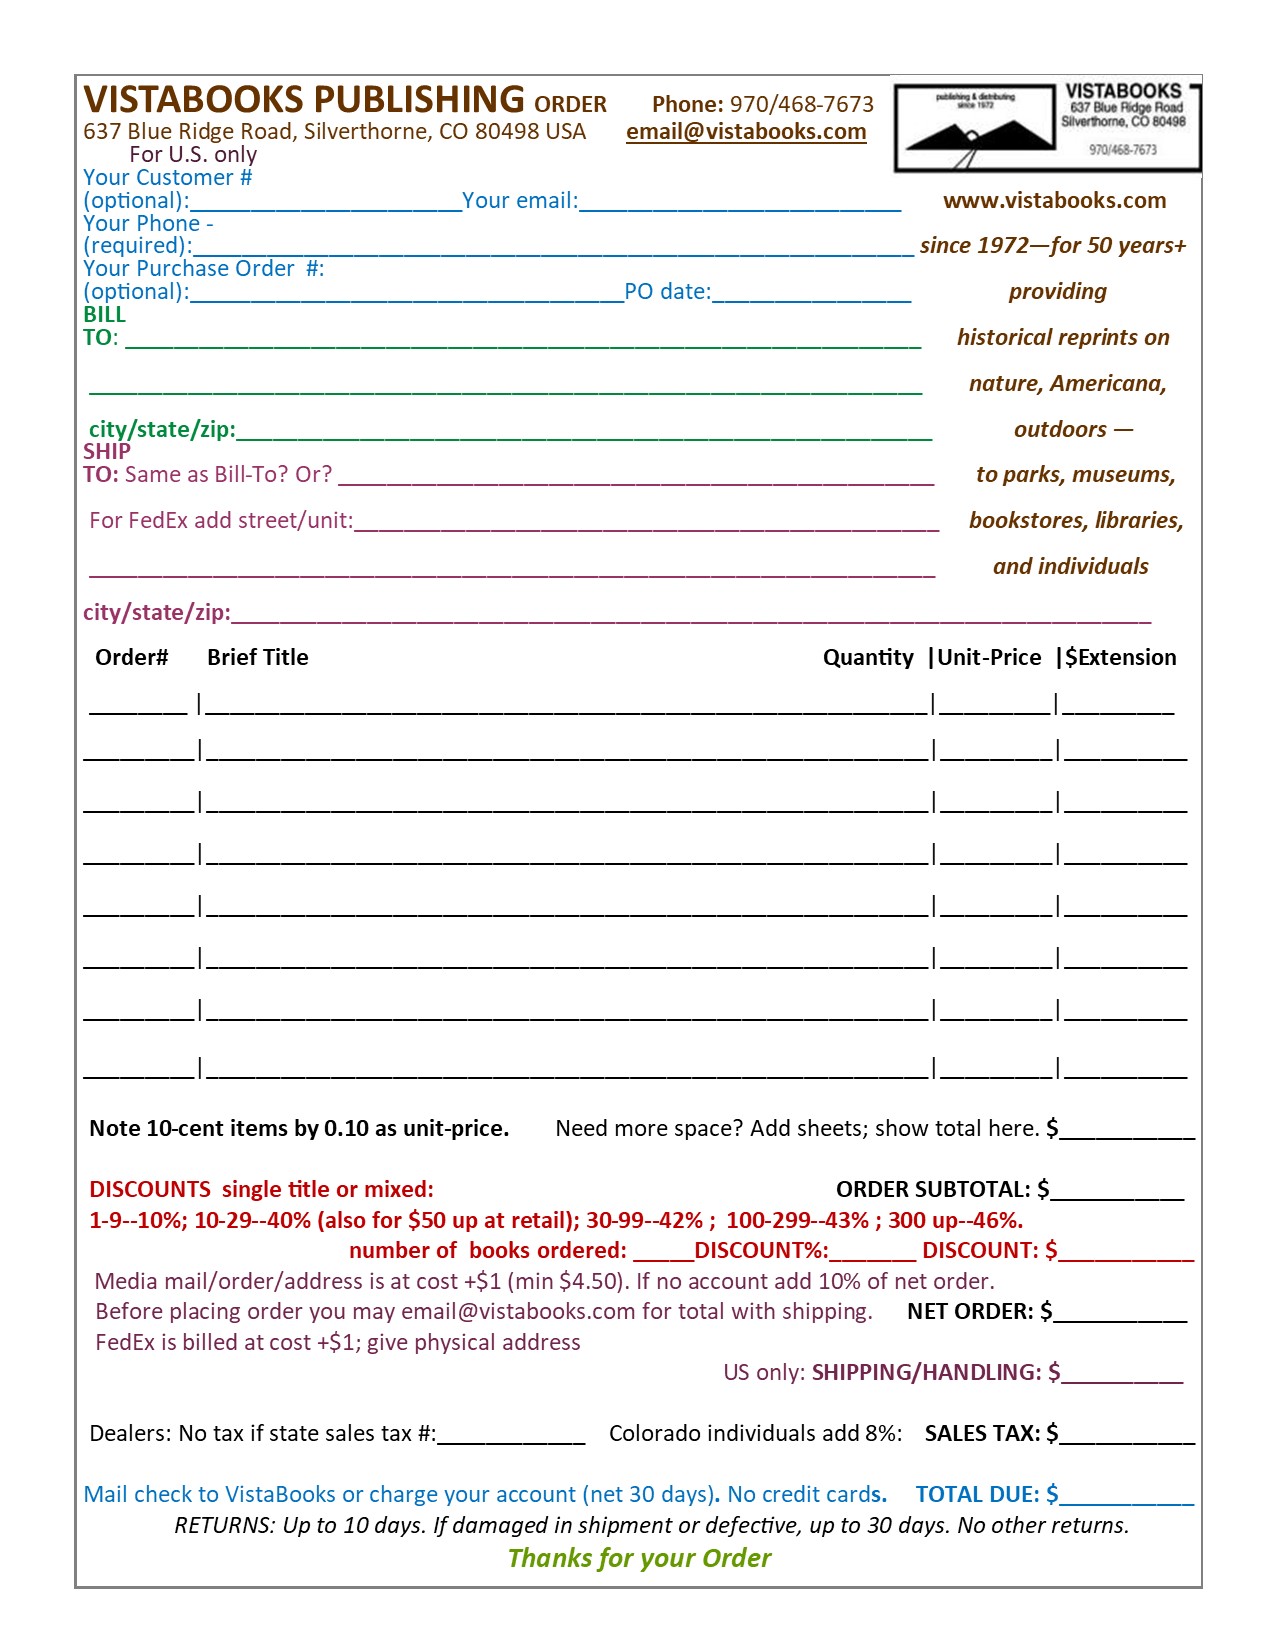 VistaBooks order form